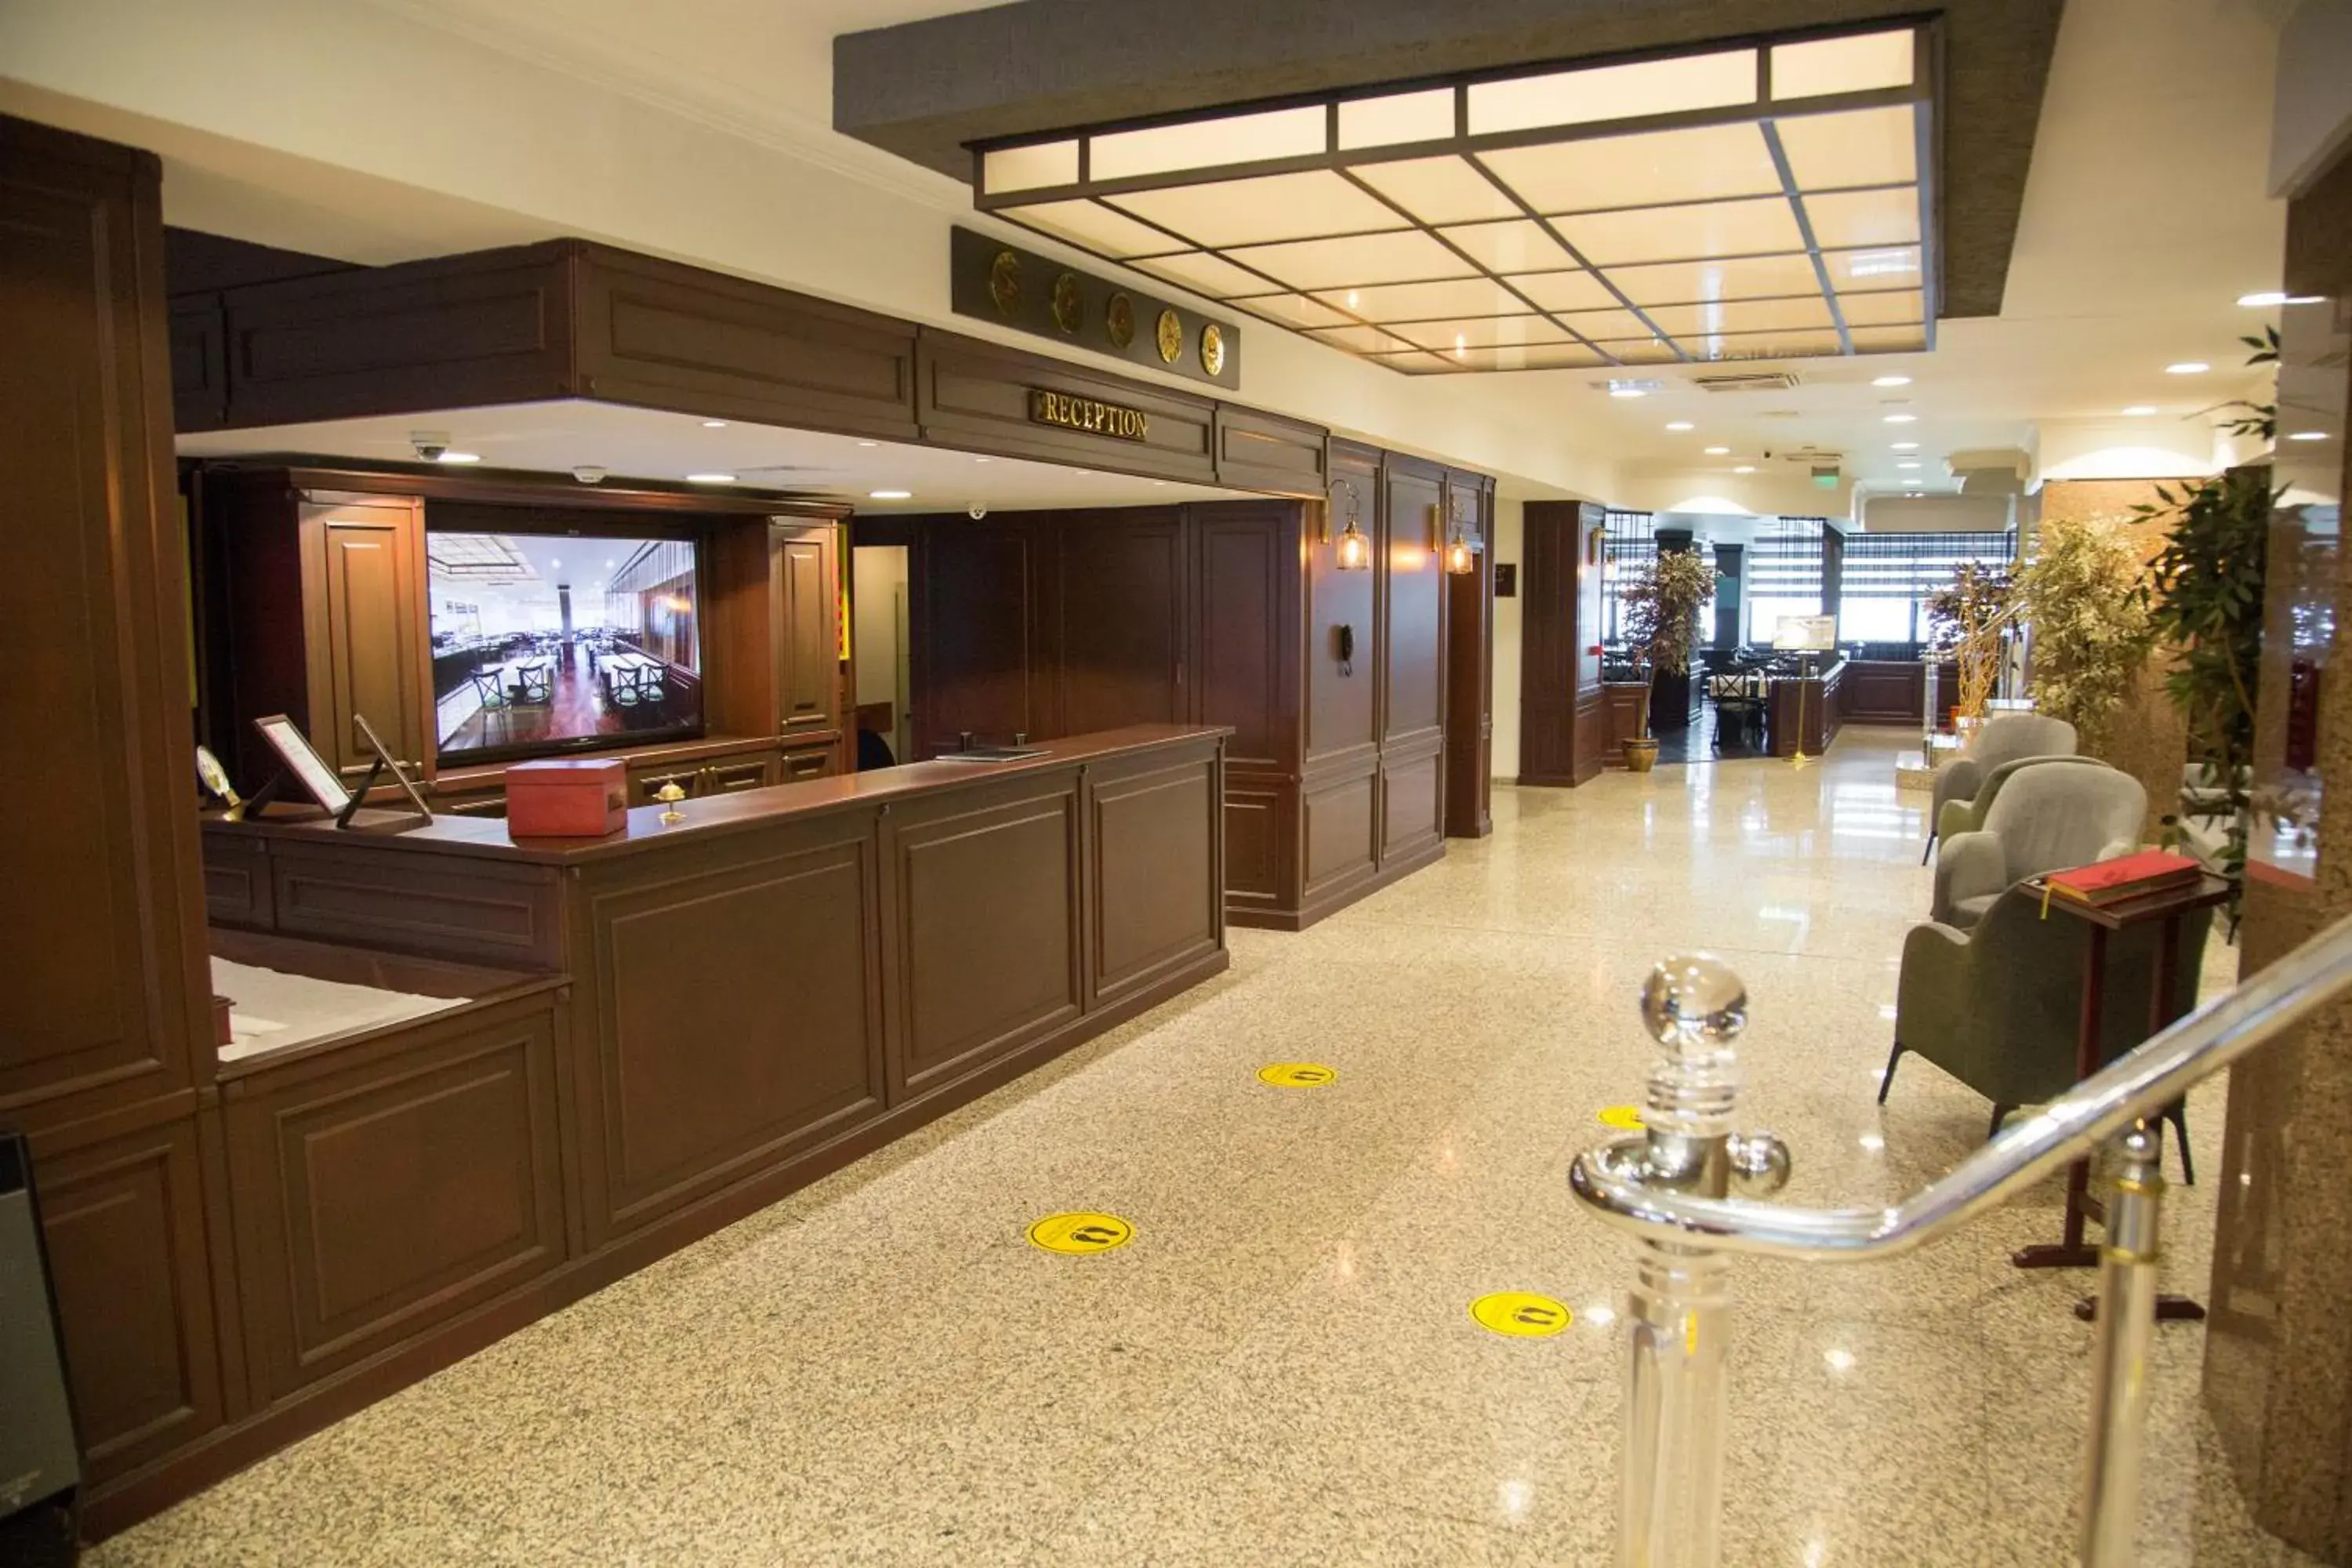 Lobby or reception in Dila Hotel